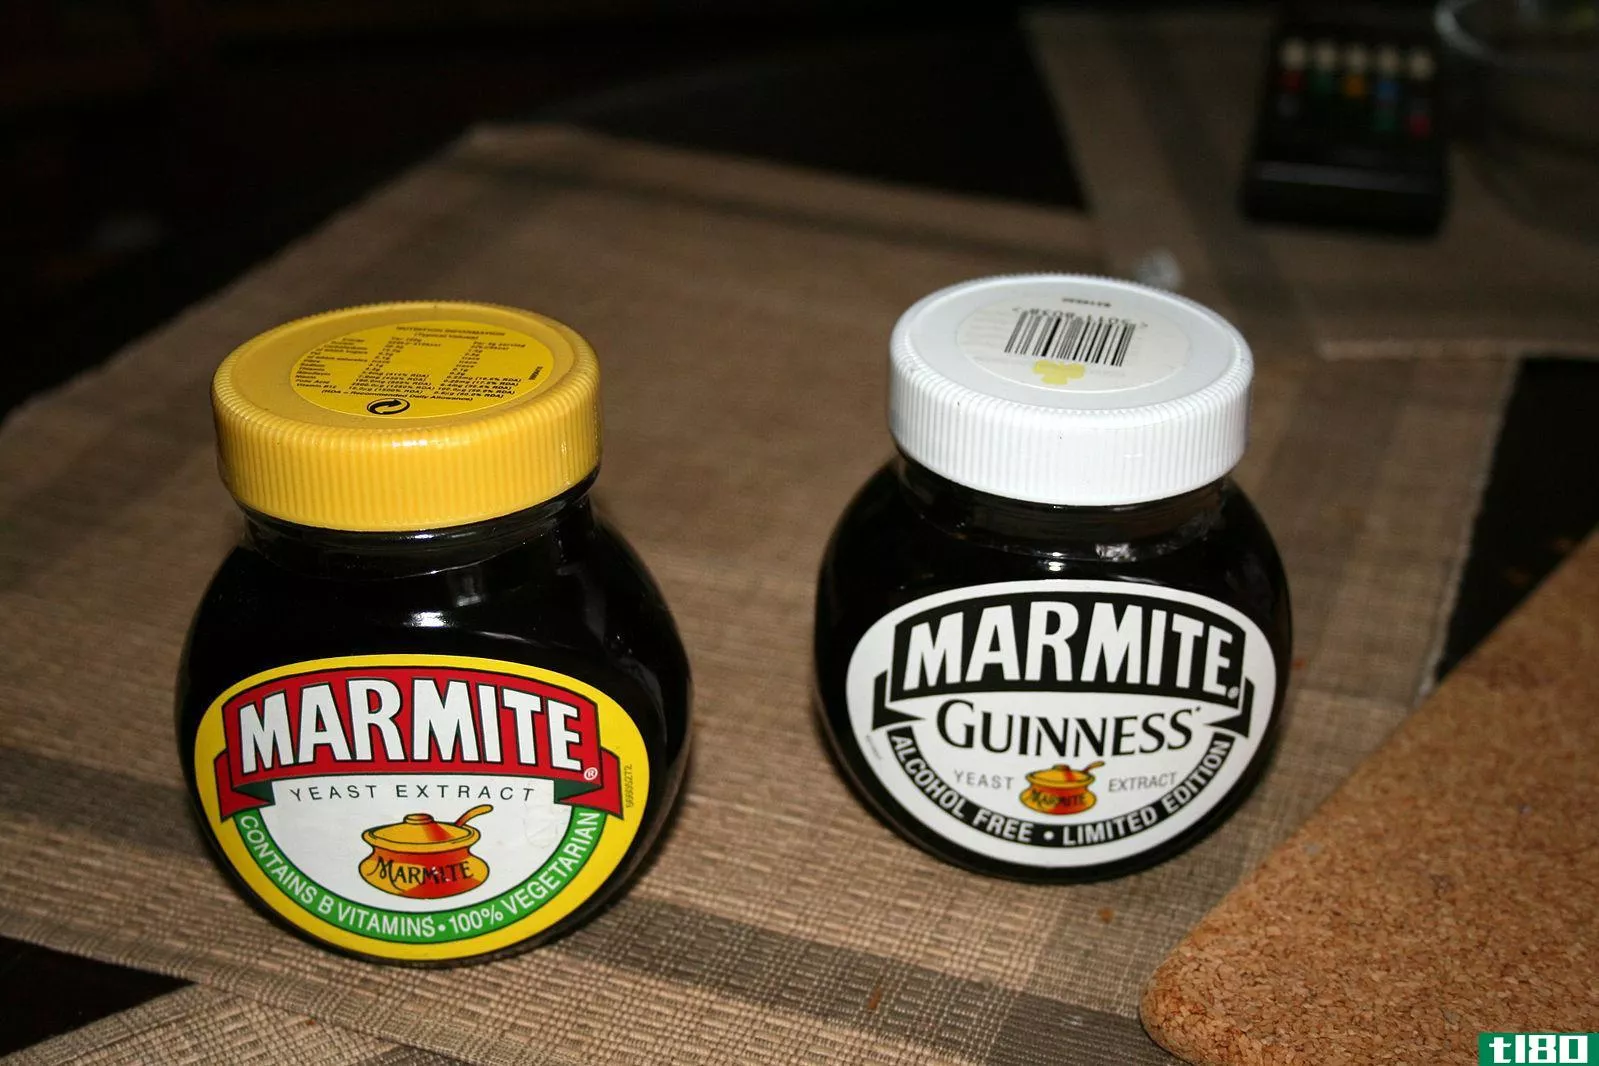 蔬菜调味品(vegemite)和泥灰岩(marmite)的区别